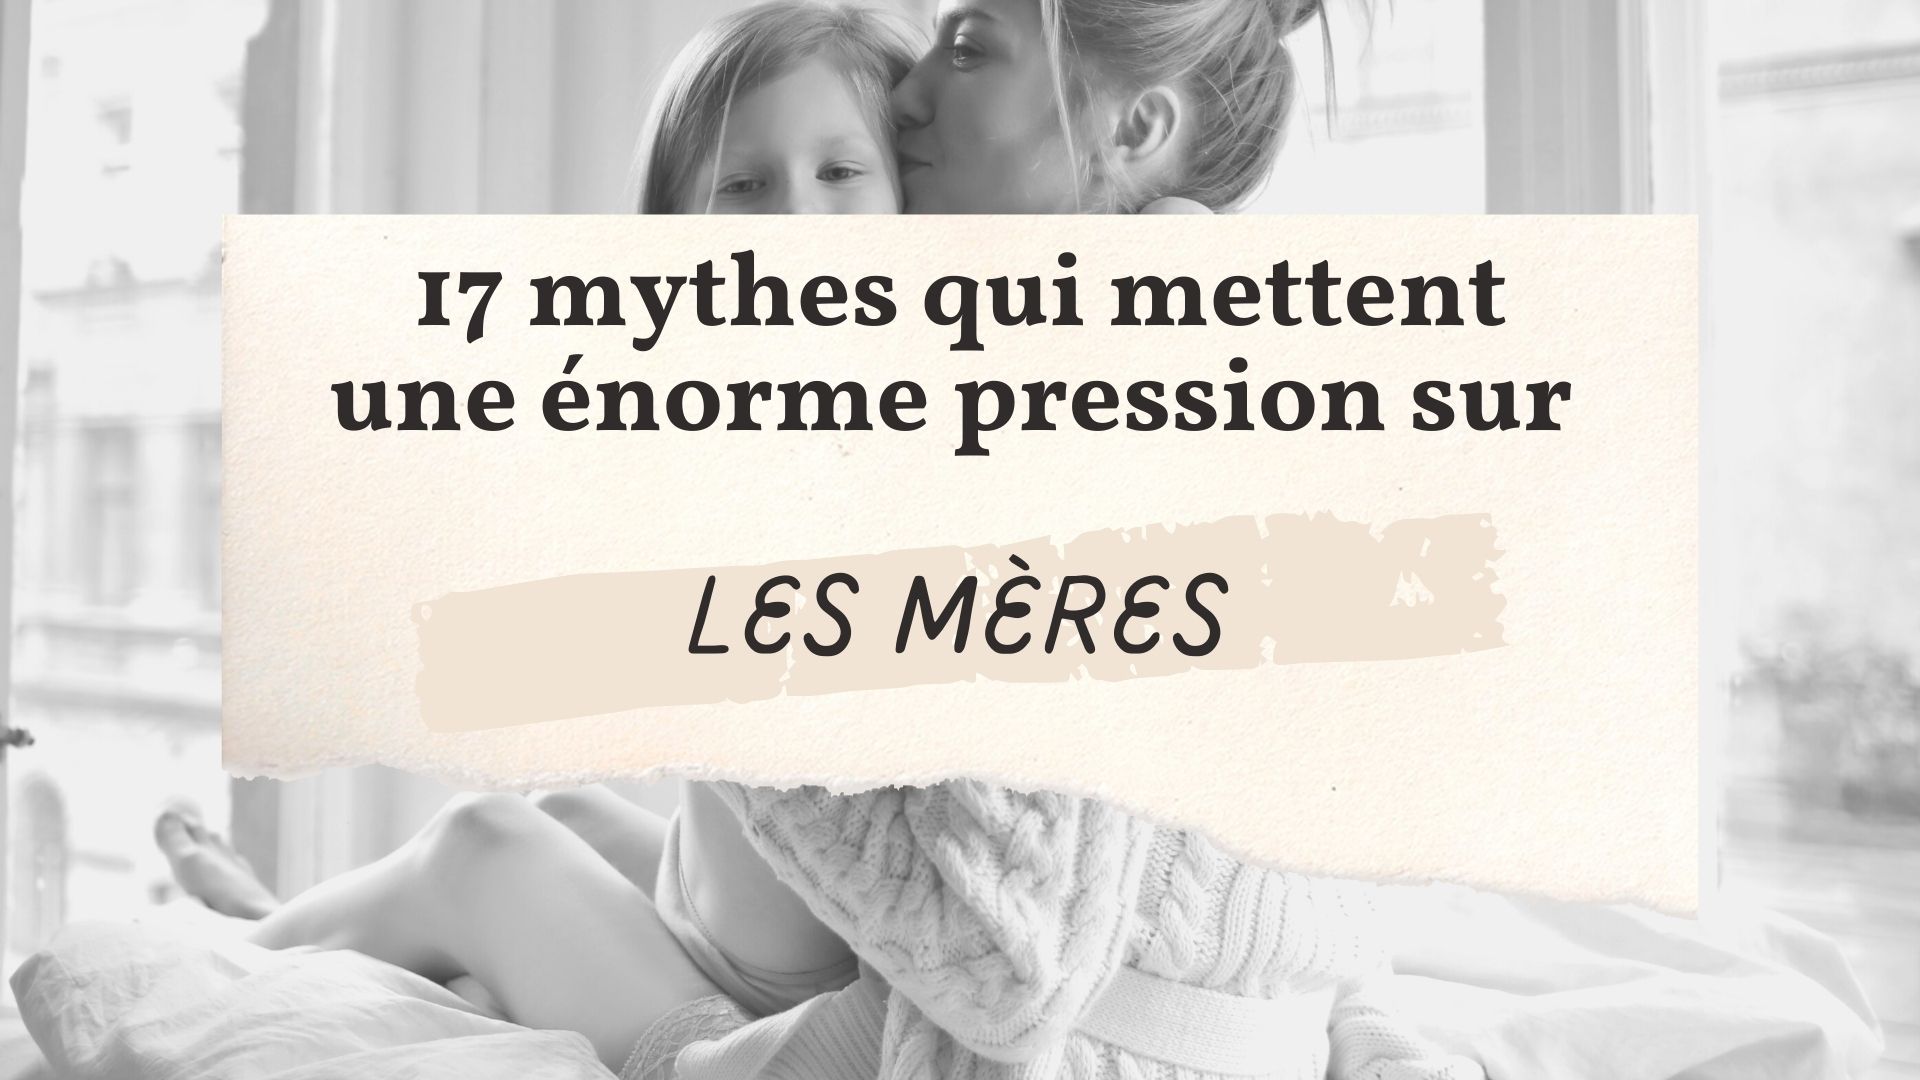 17 mythes qui mettent une énorme pression mères